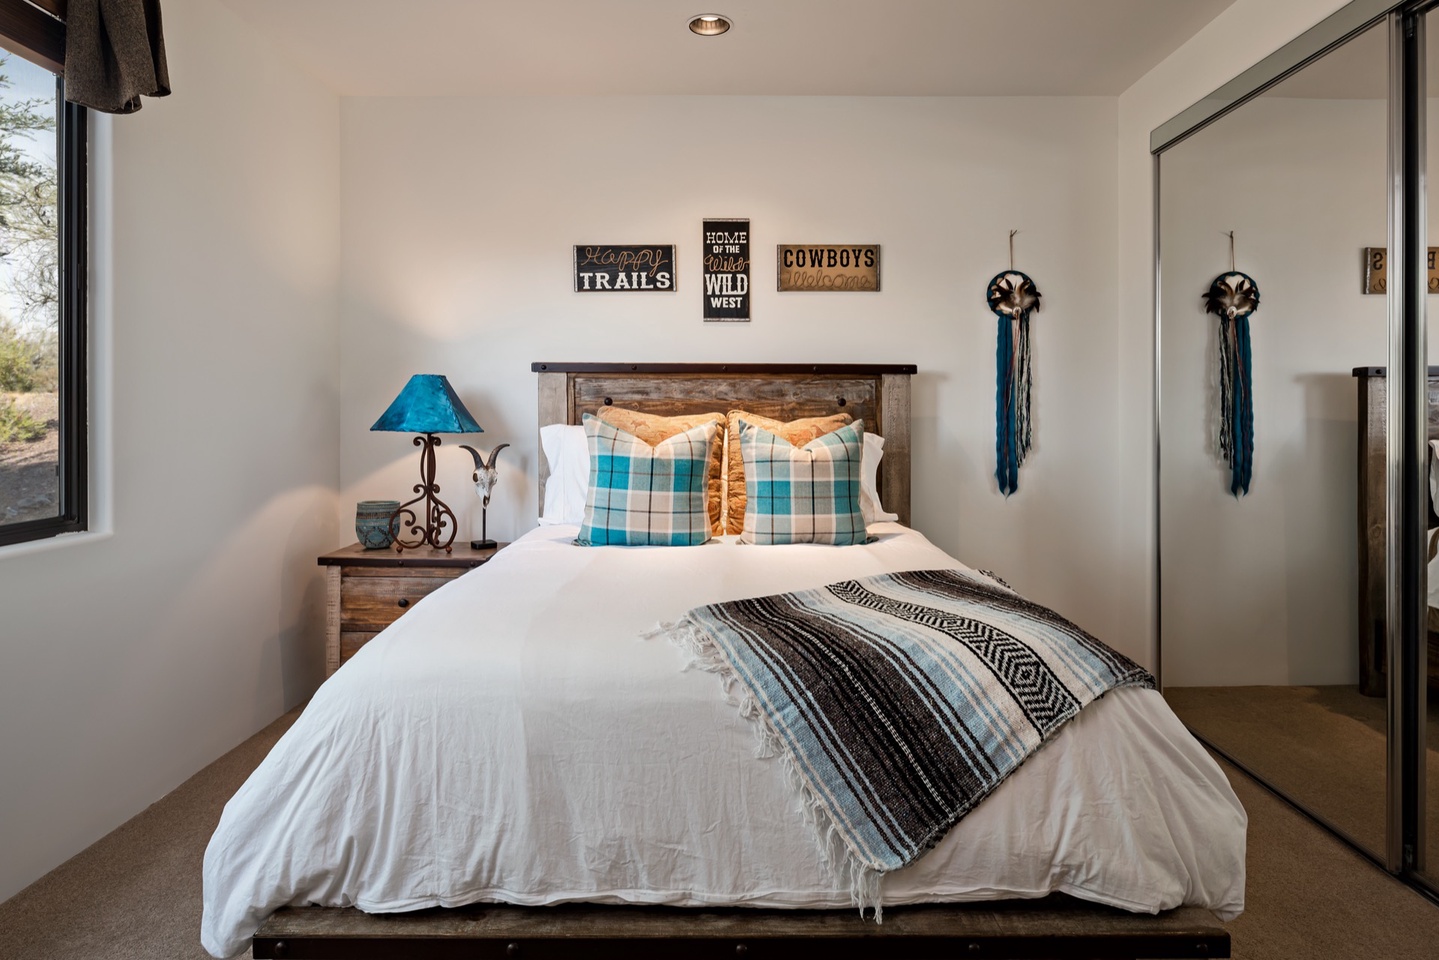 Bedroom 2 - Queen bed - Quality linens